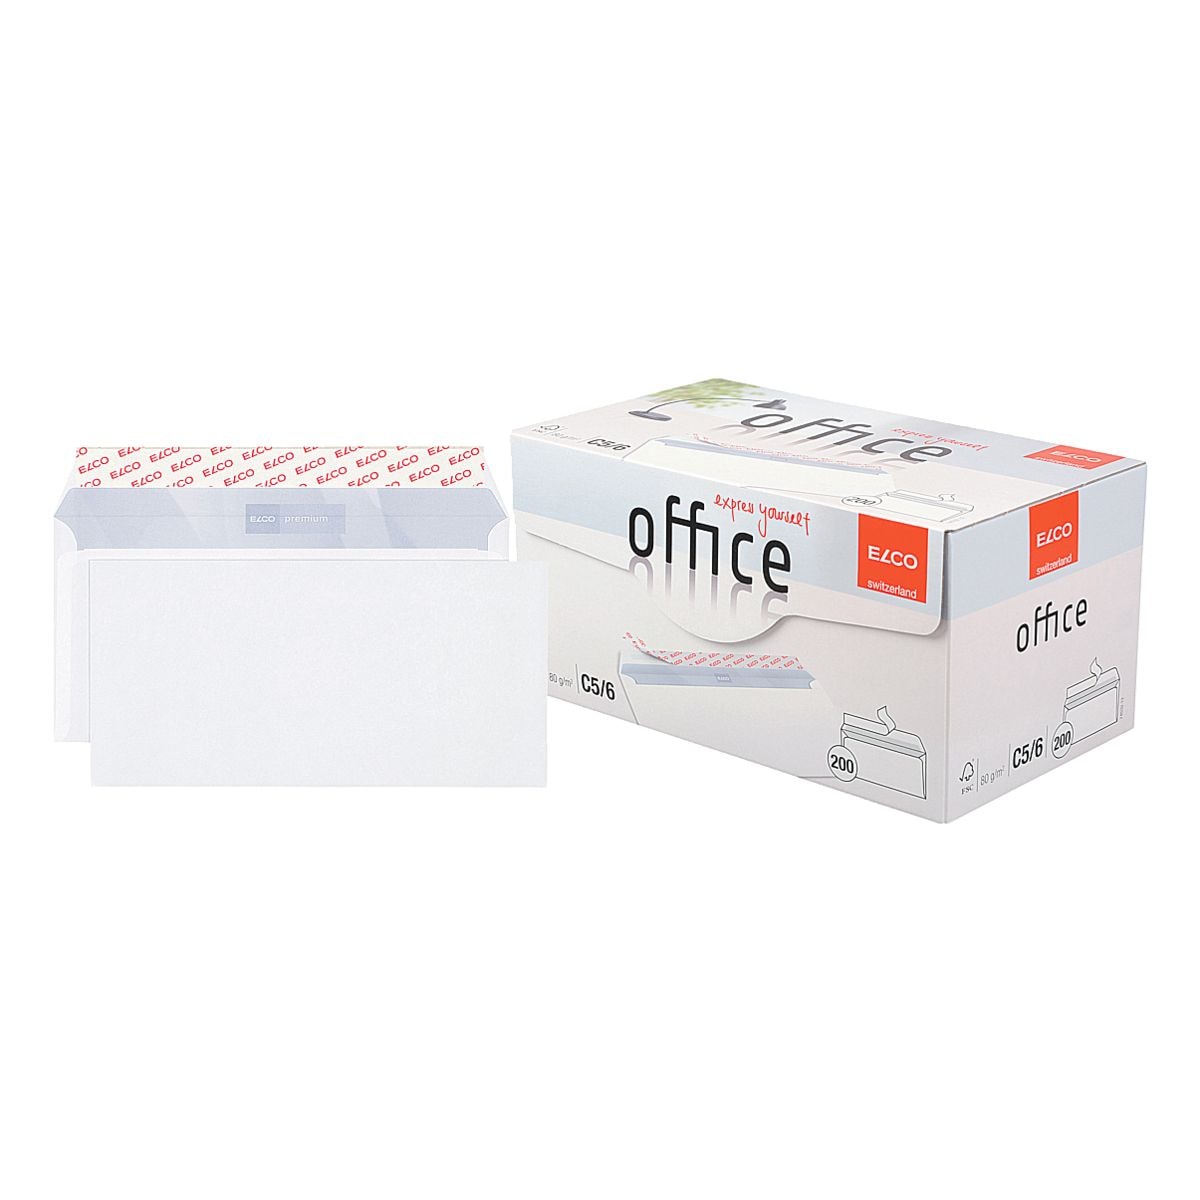 Briefumschlge ELCO Office C5/6, DIN lang+ 80 g/m ohne Fenster, haftklebend - 200 Stck